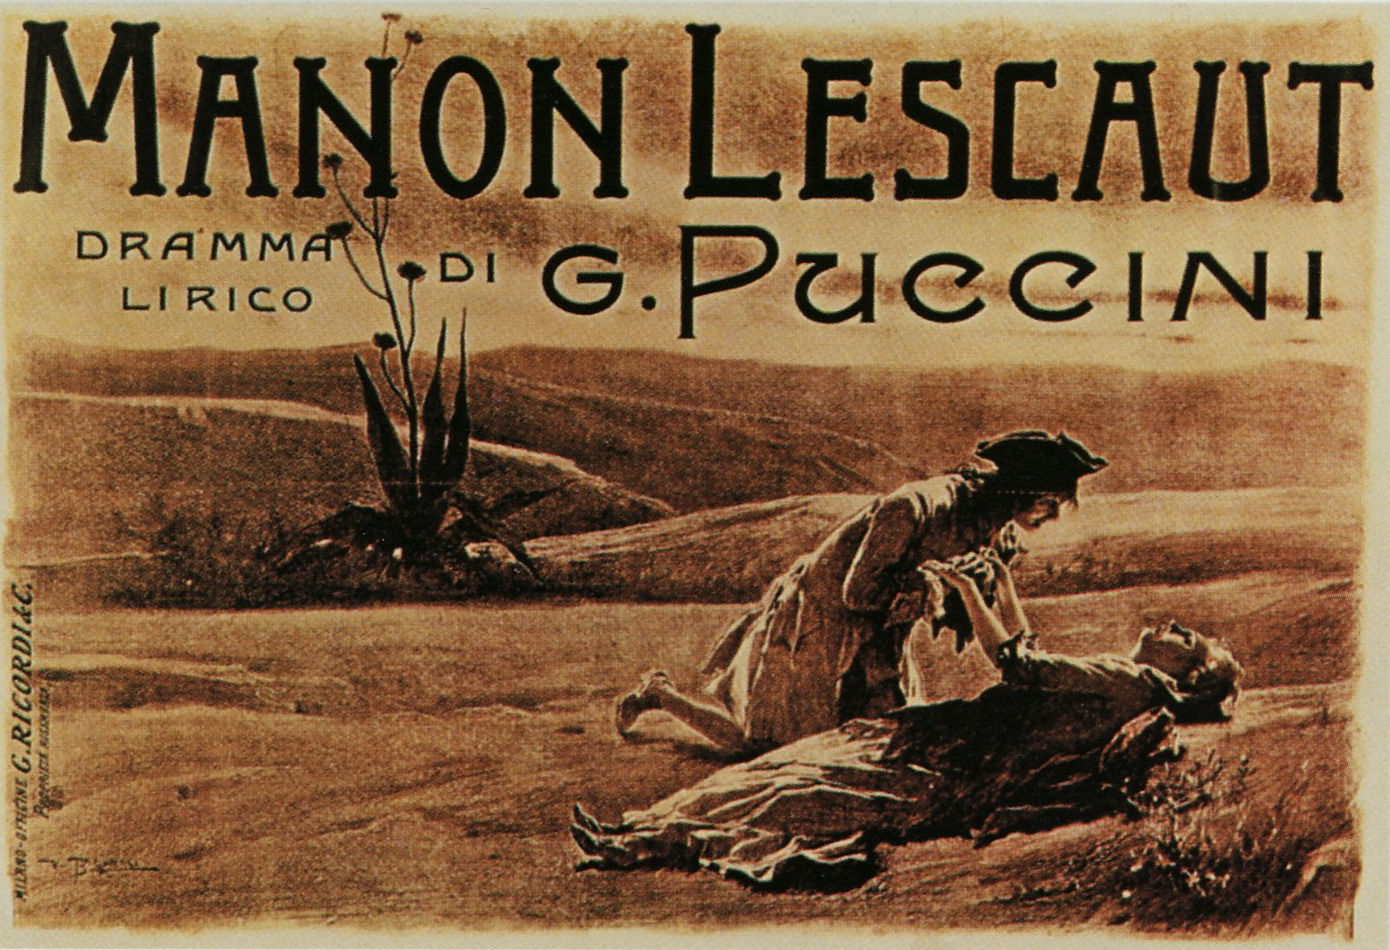 Poster for the premiere of Puccini's Manon Lescaut